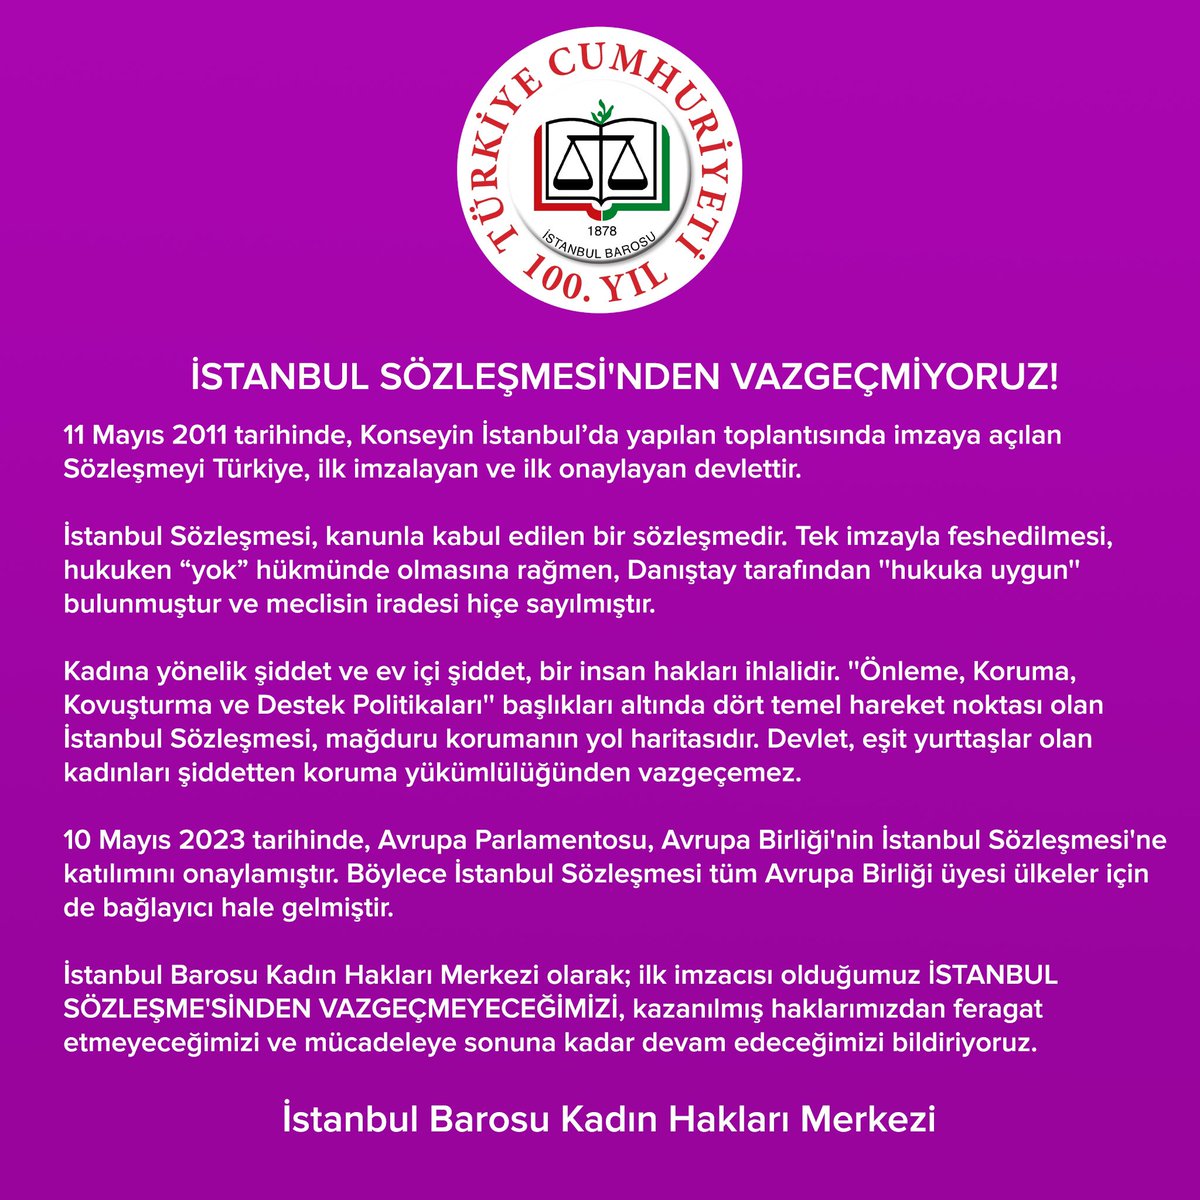 İSTANBUL SÖZLEŞMESİ'NDEN VAZGEÇMİYORUZ!
 
11 Mayıs 2011 tarihinde, Avrupa Konseyi’nin İstanbul’da yapılan toplantısında imzaya açılan Sözleşmeyi Türkiye, ilk imzalayan ve ilk onaylayan devlettir.
 
#istanbulSözleşmesi, kanunla kabul edilen bir sözleşmedir. Tek imzayla…